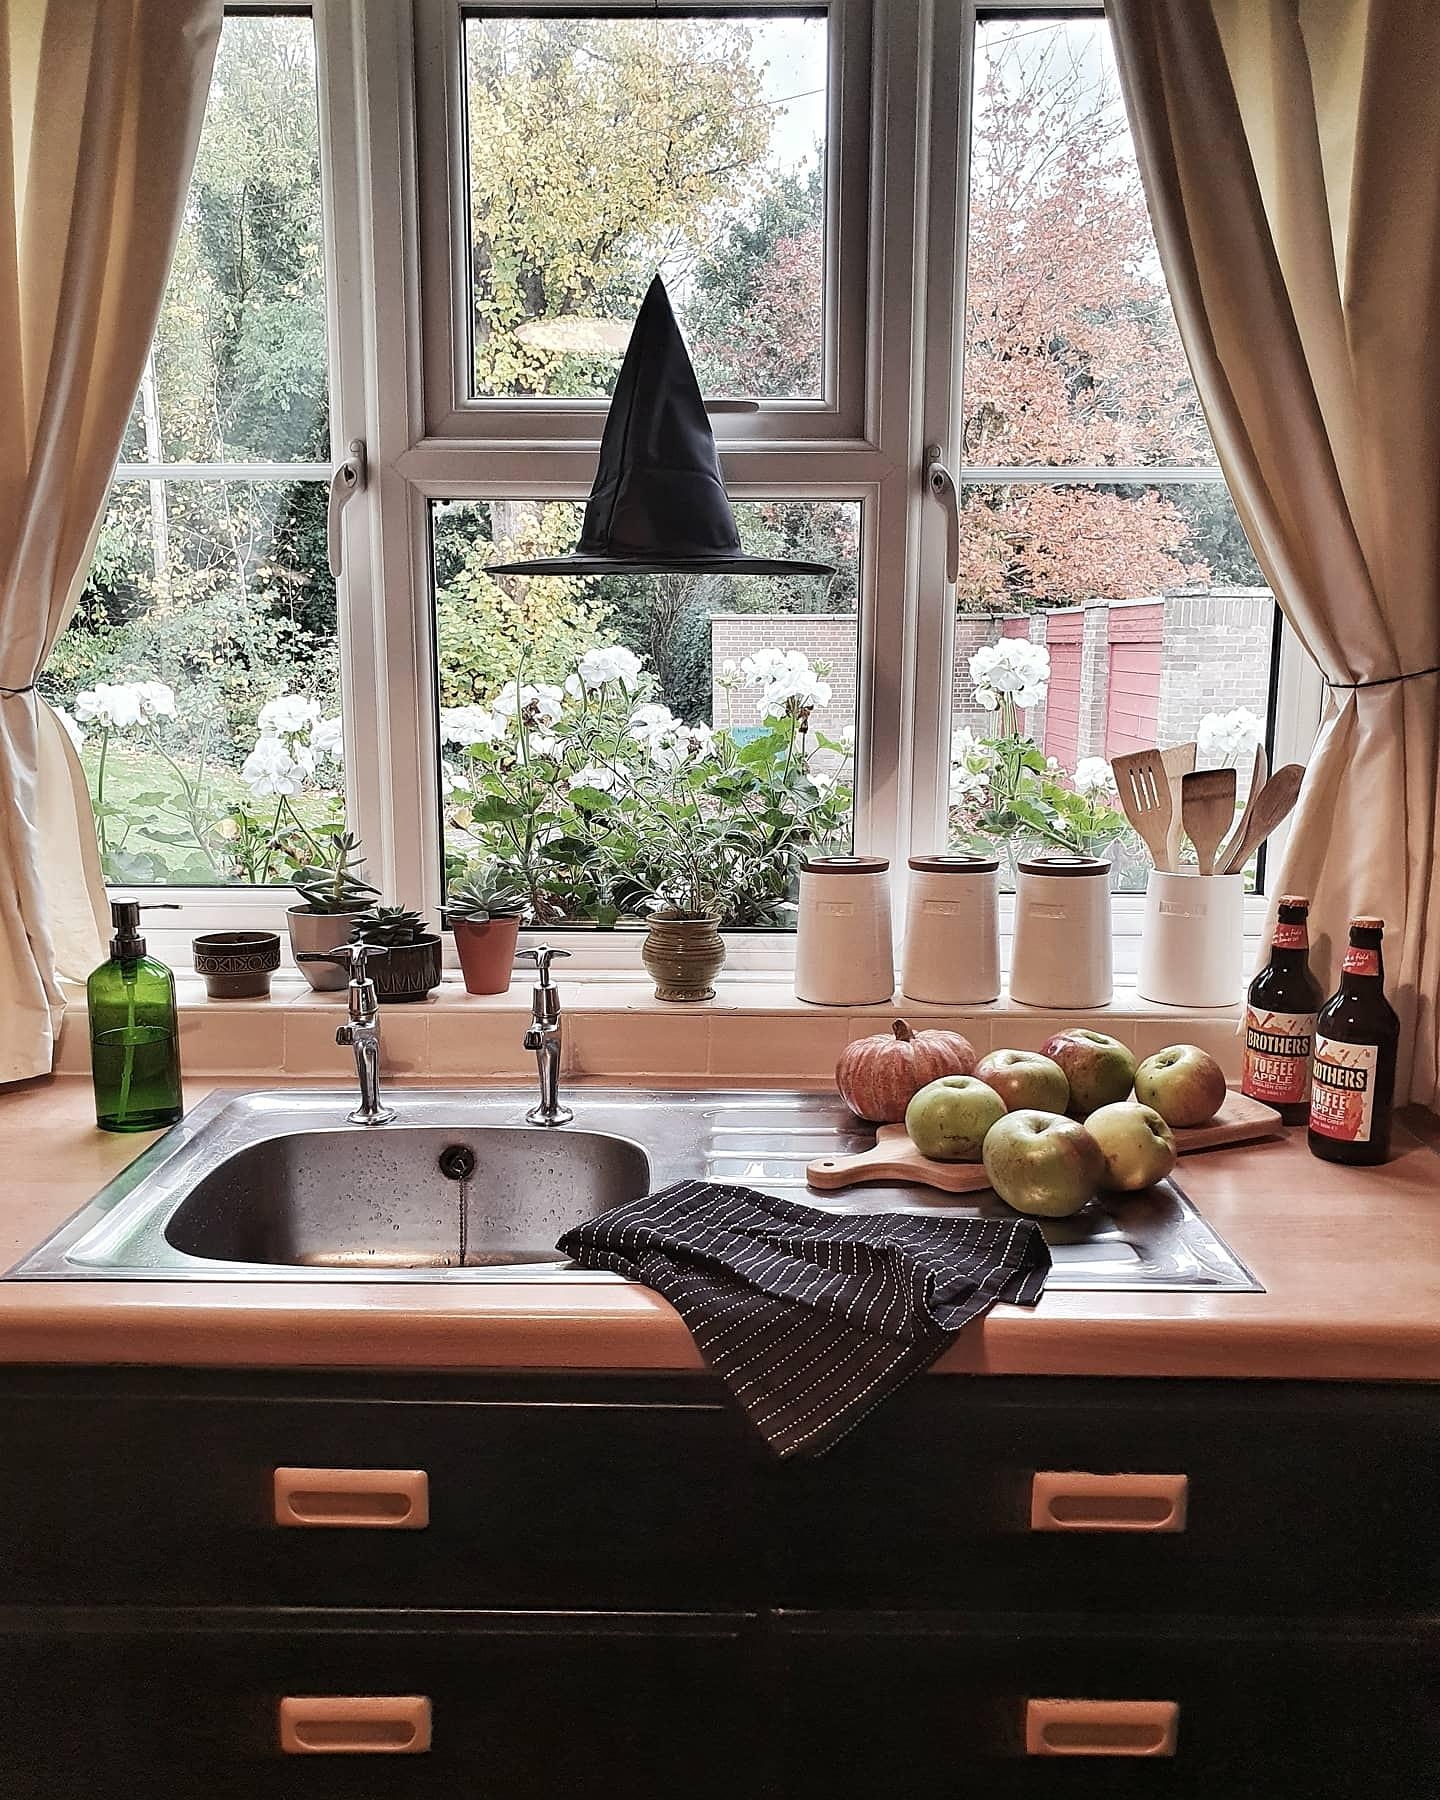 #interior #halloween #kitchen #couchliebt #herbstdeko